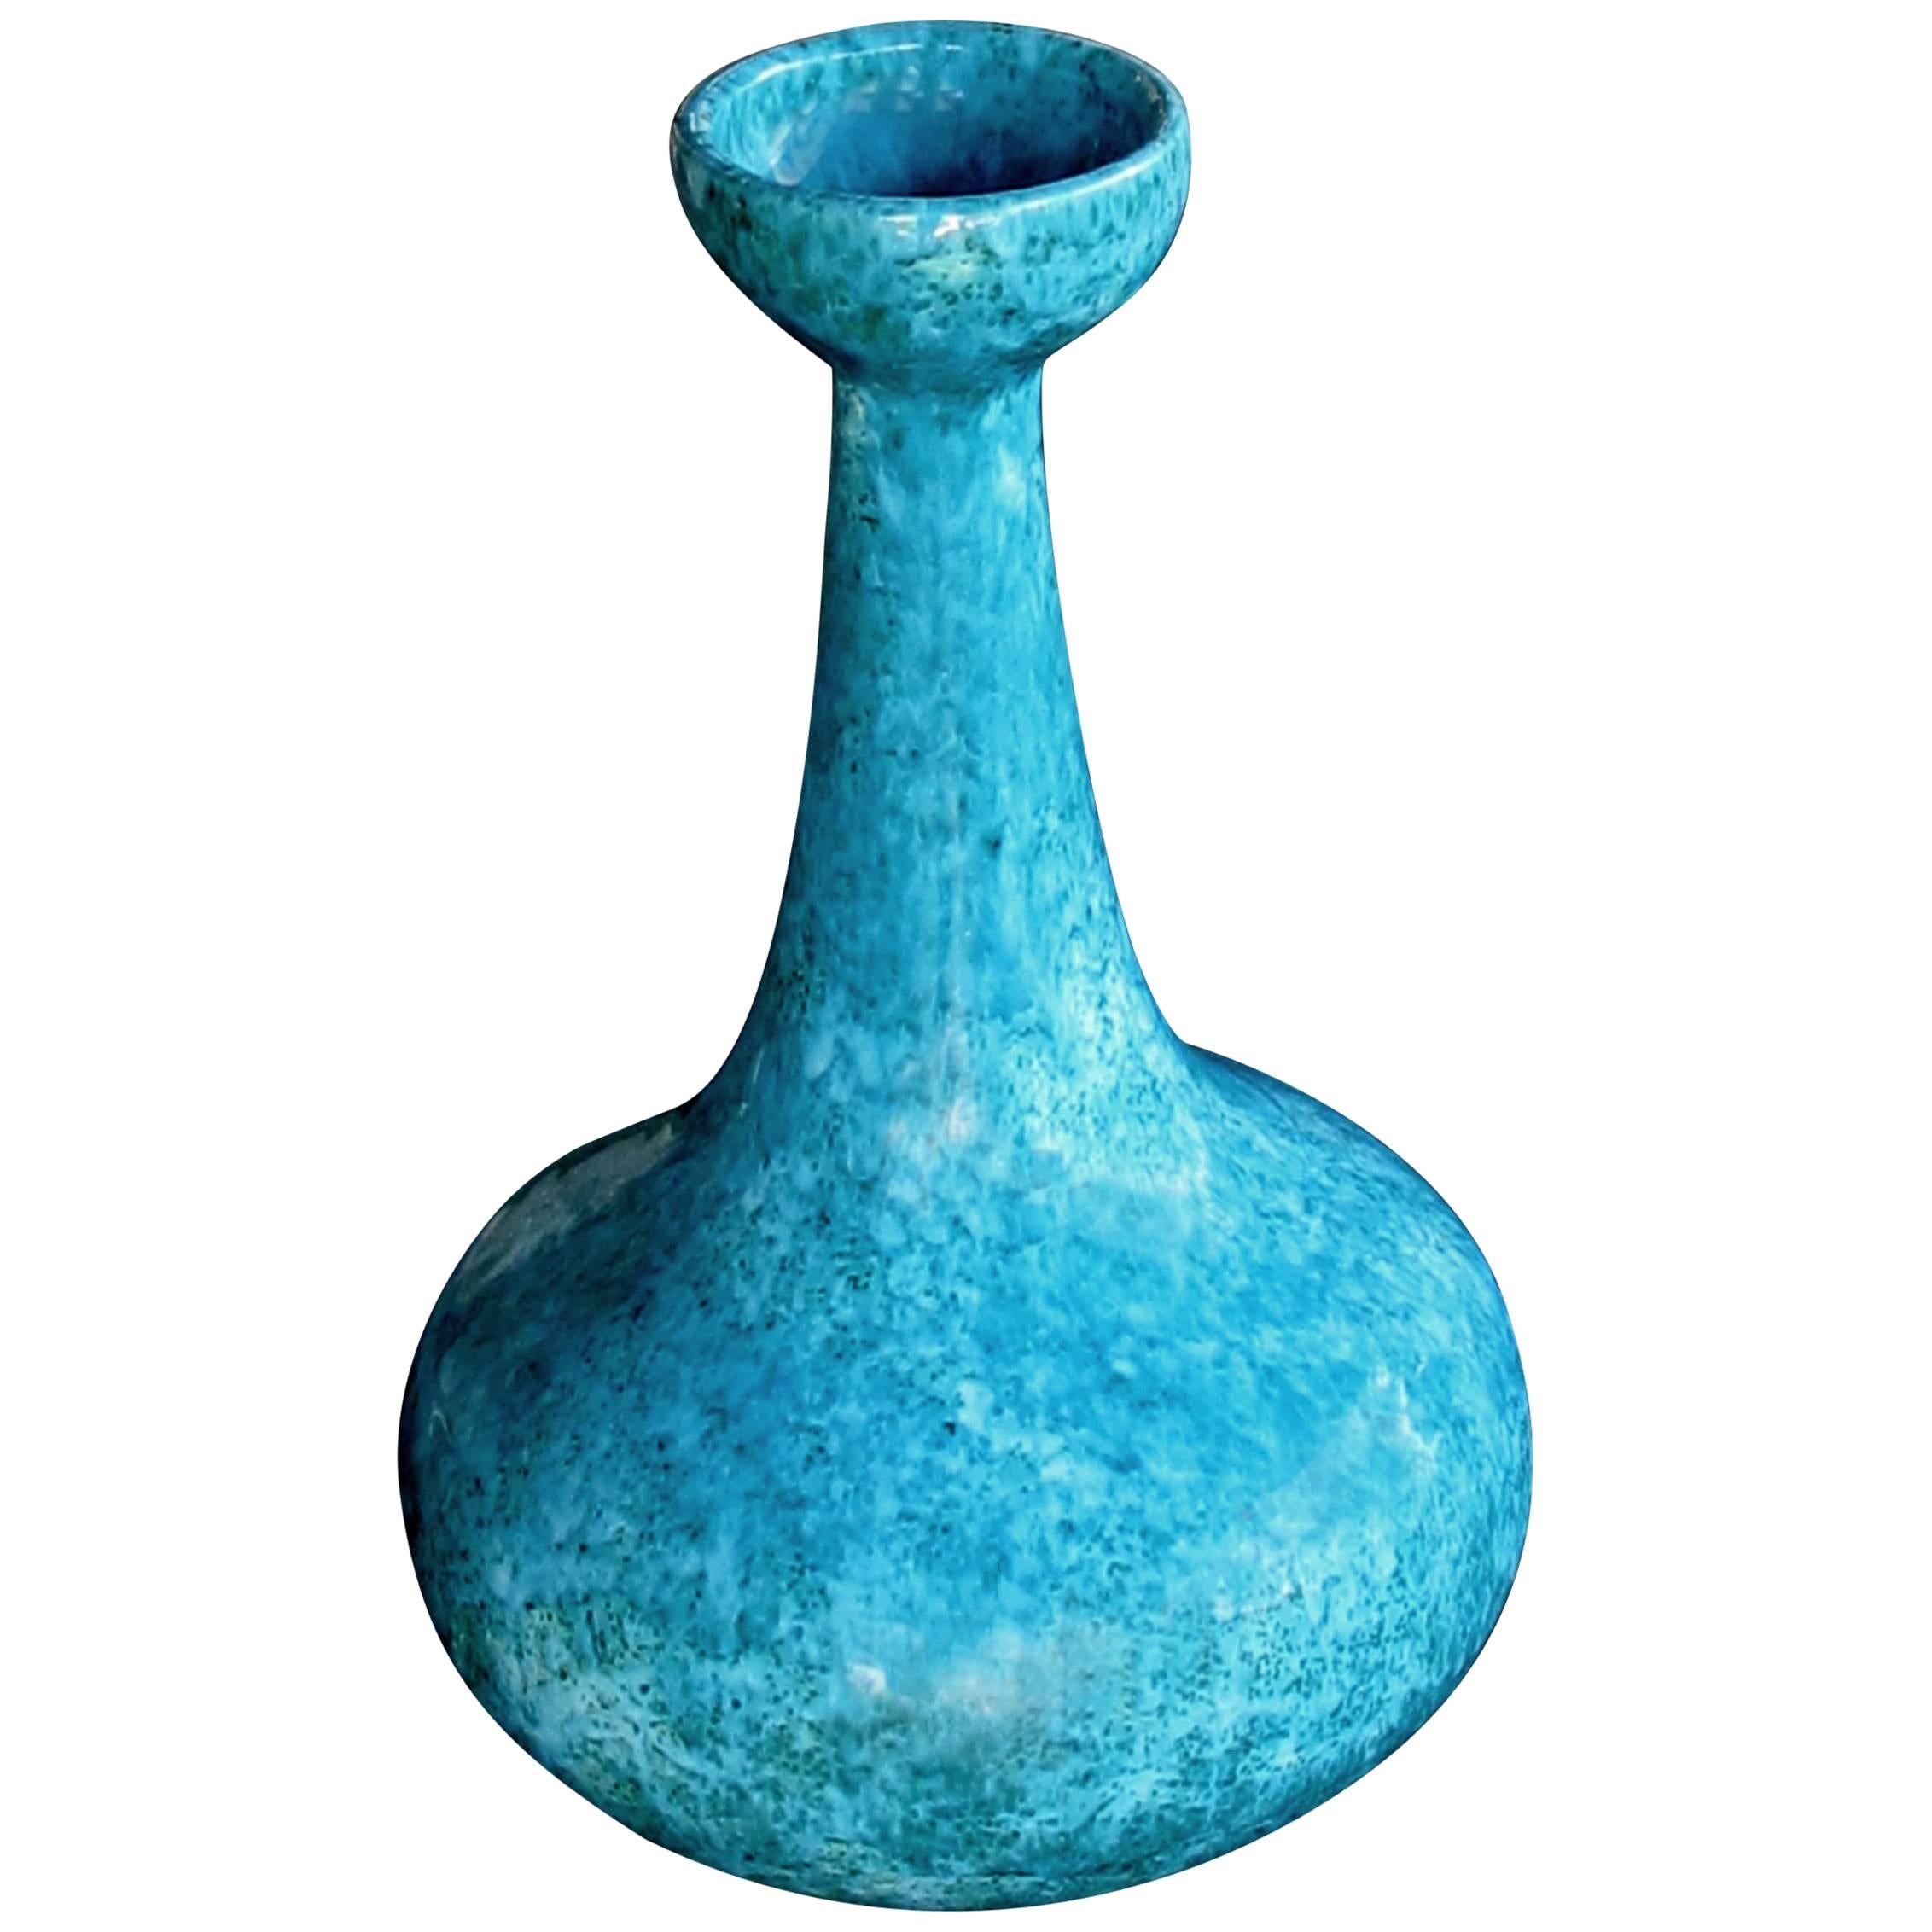 Impressive American 1960s Jaru Pottery Bottle-Form Teal-Glazed Vase/Vessel For Sale